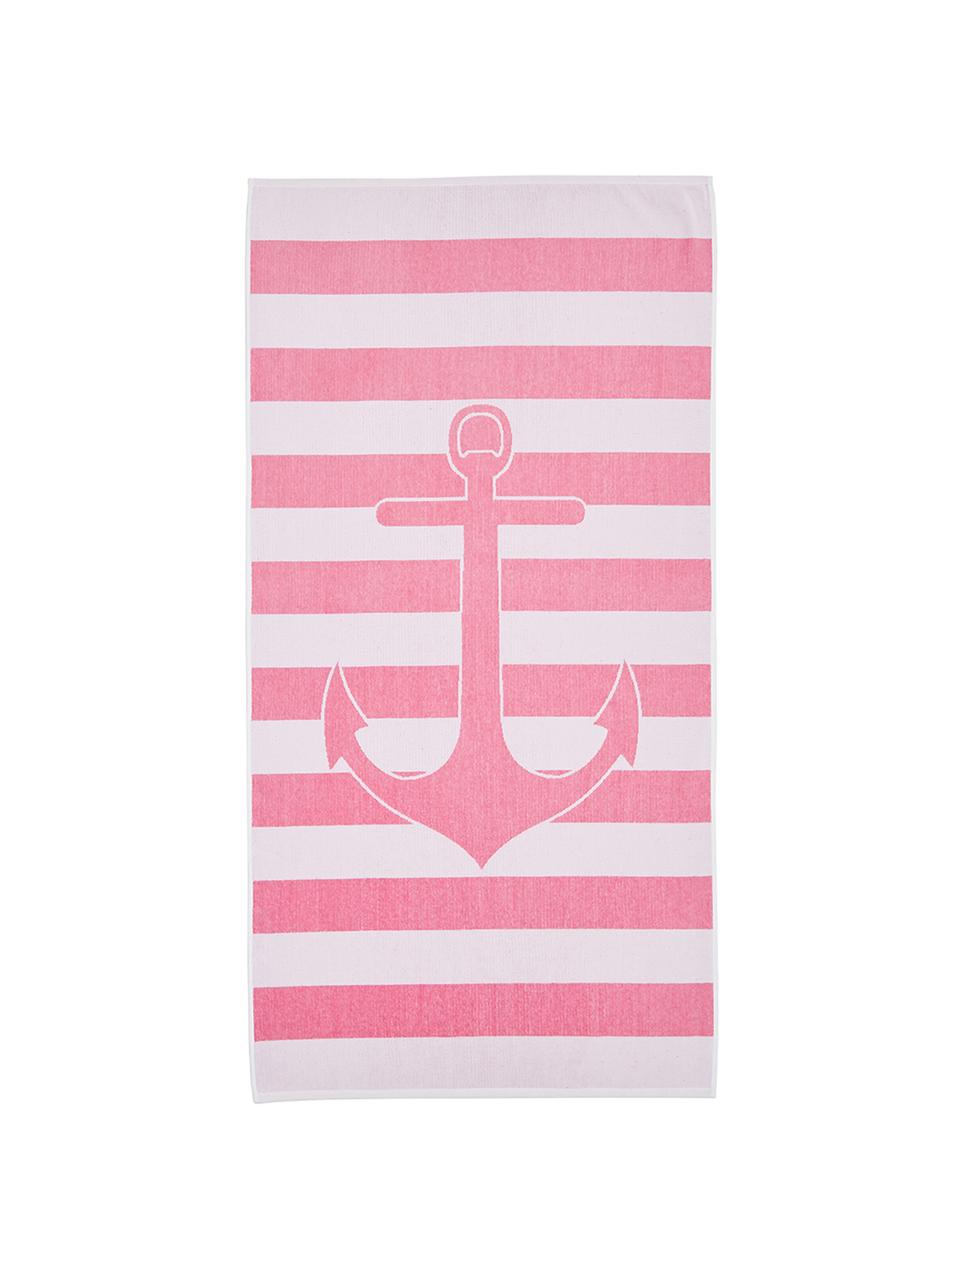 Gestreiftes Strandtuch Anon mit Anker-Motiv, 100% Baumwolle
leichte Qualität 380 g/m², Pink, Weiß, 80 x 160 cm